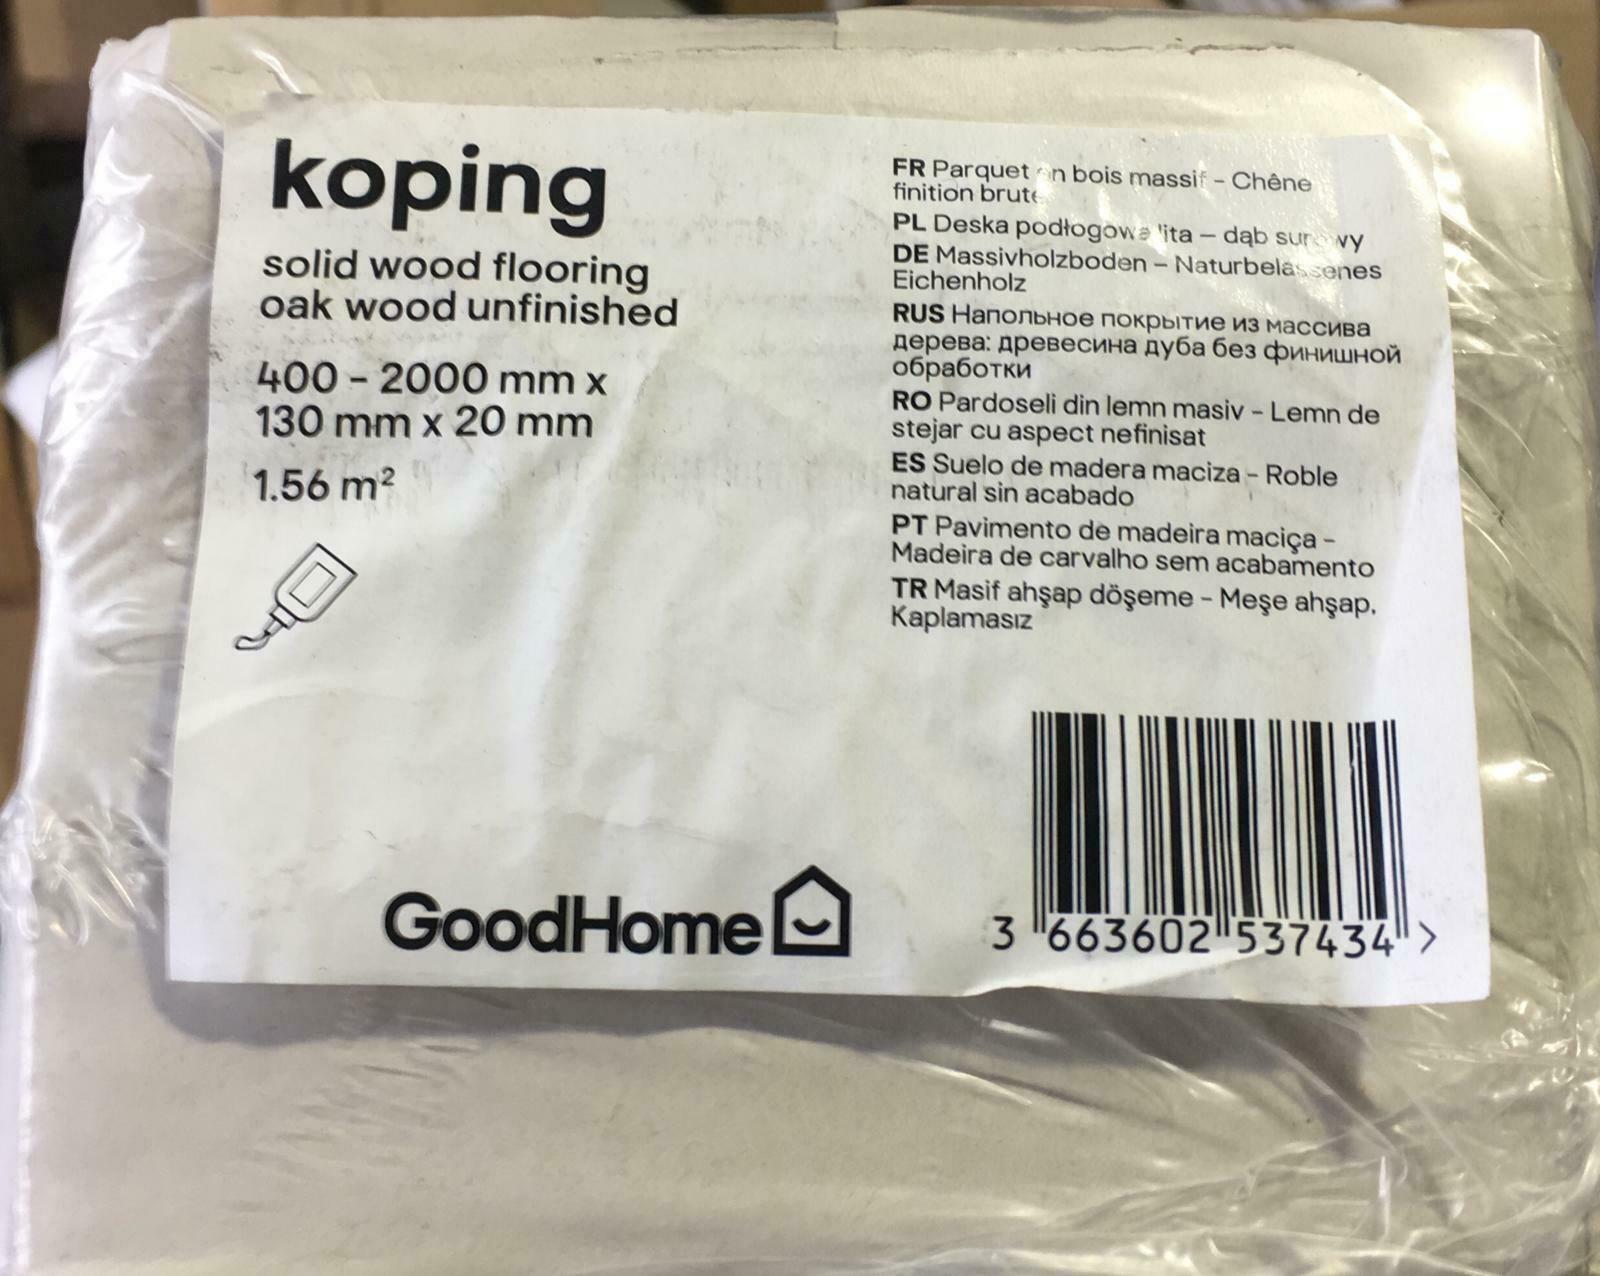 1.9 Pack of GoodHome Koping Natural Oak Solid wood flooring, -7434